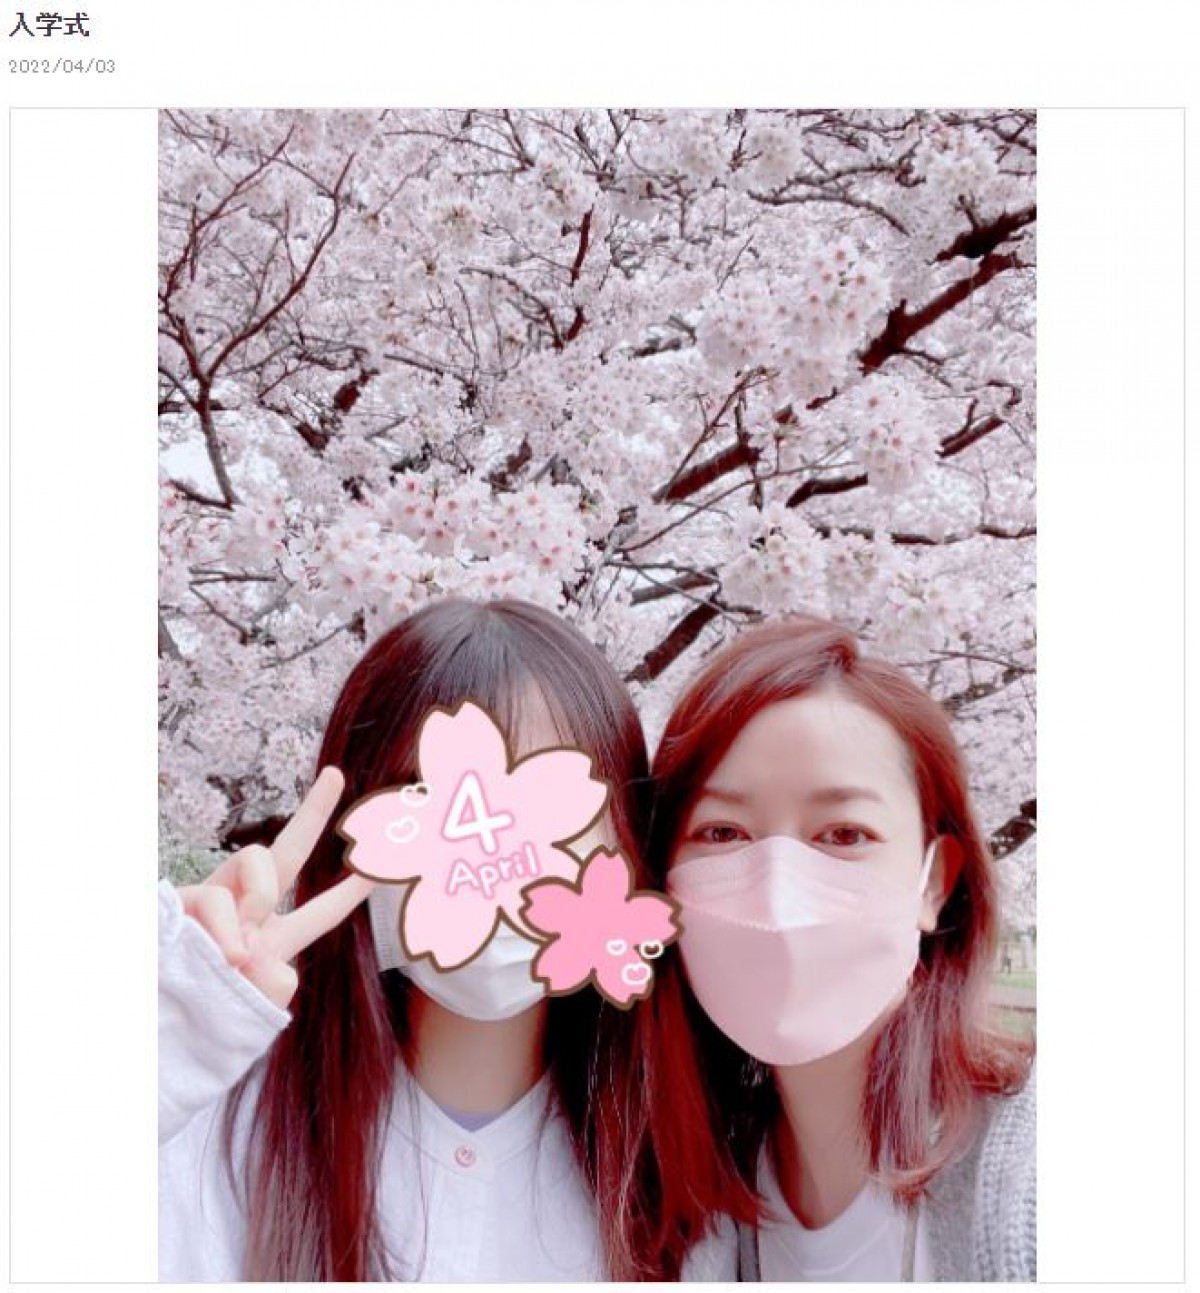 細川直美、入学式の18歳長女と　桜満開の木の下2ショット公開